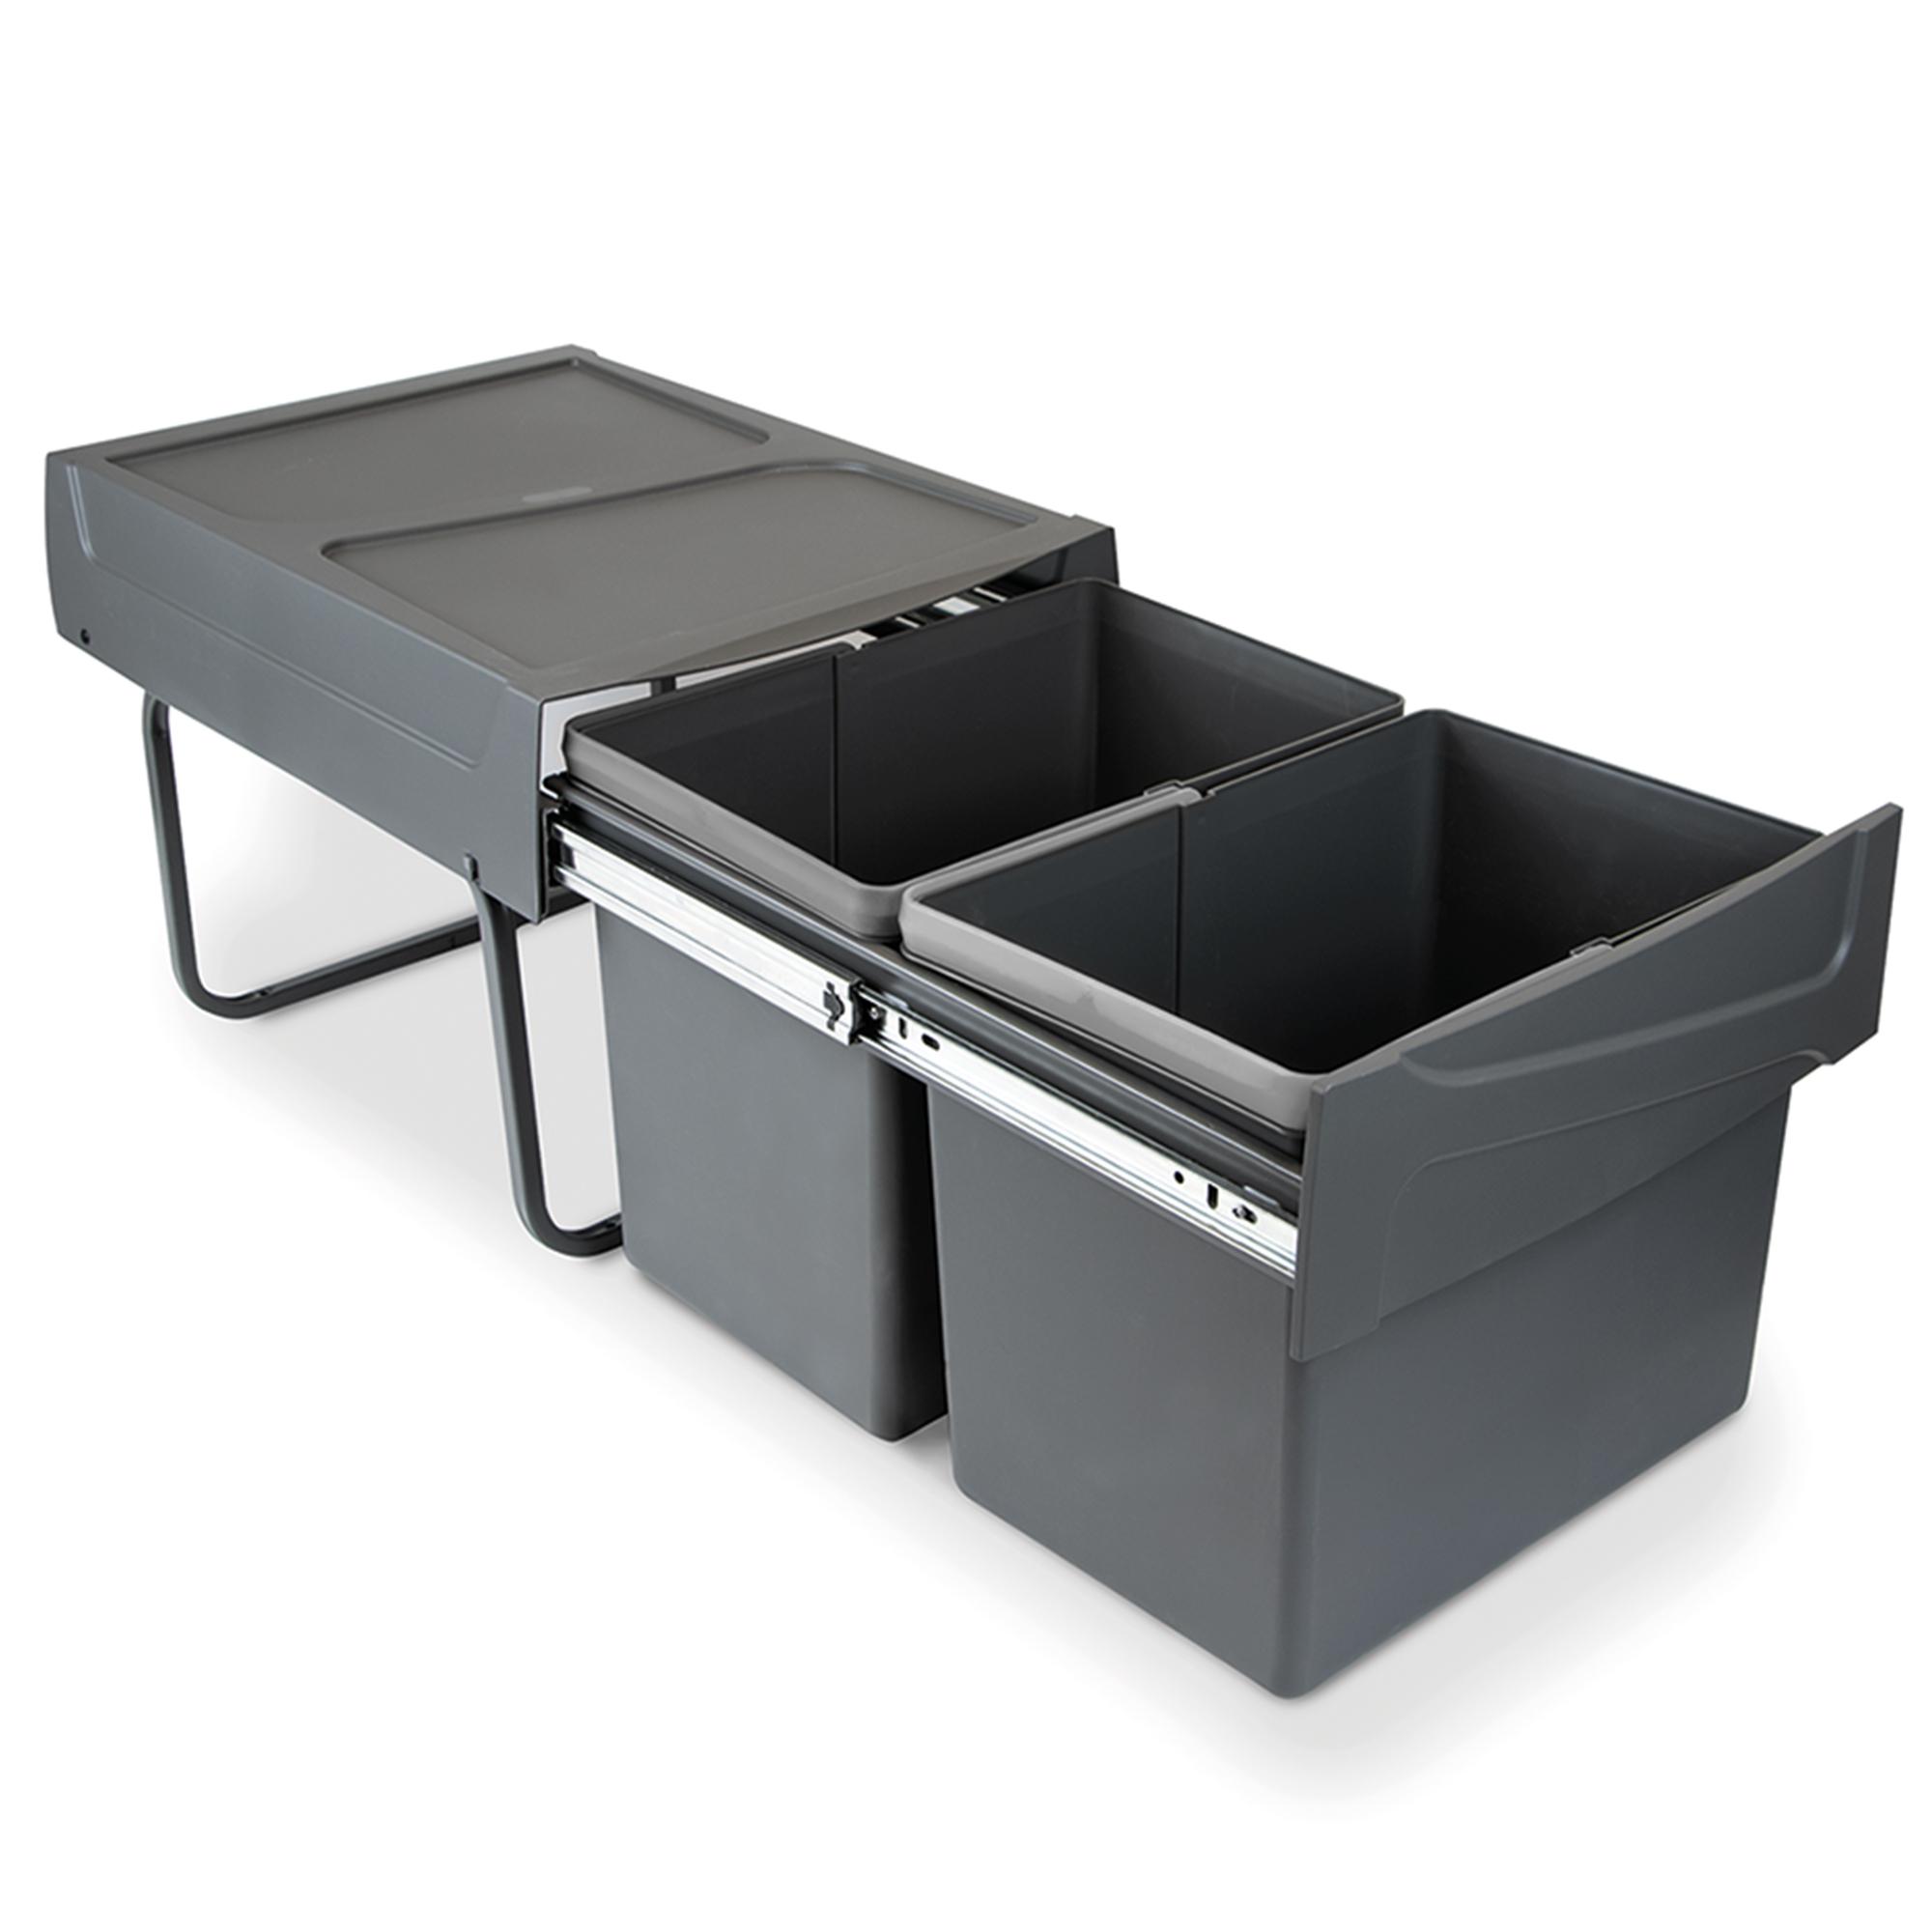 Cubo de basura y reciclaje extraíble - Para instalar en la base de un mueble